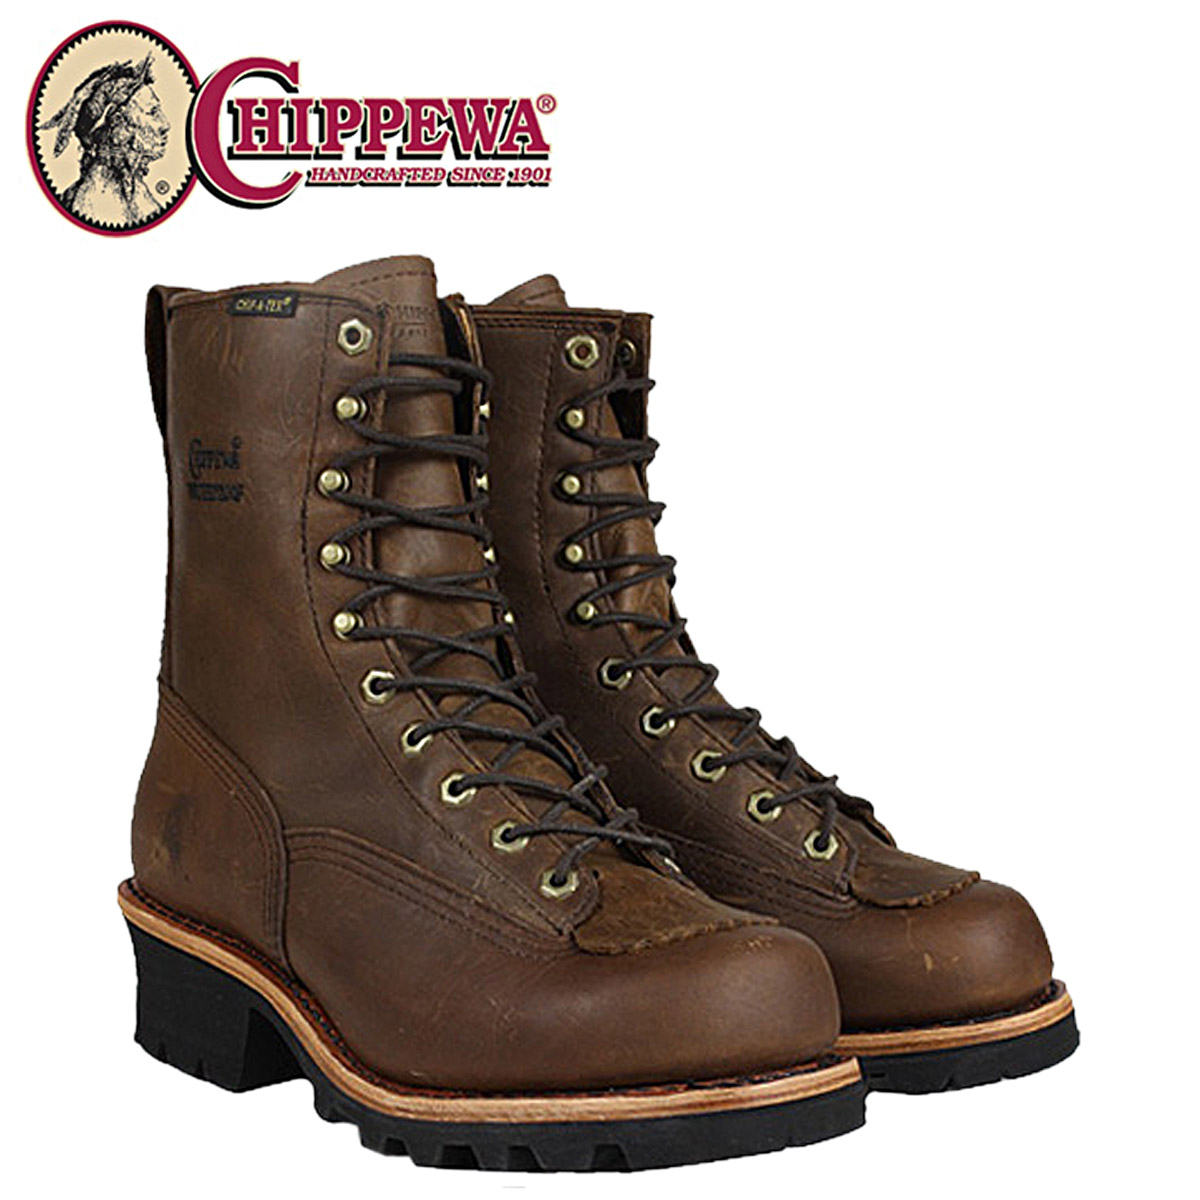 chippewa apache boots